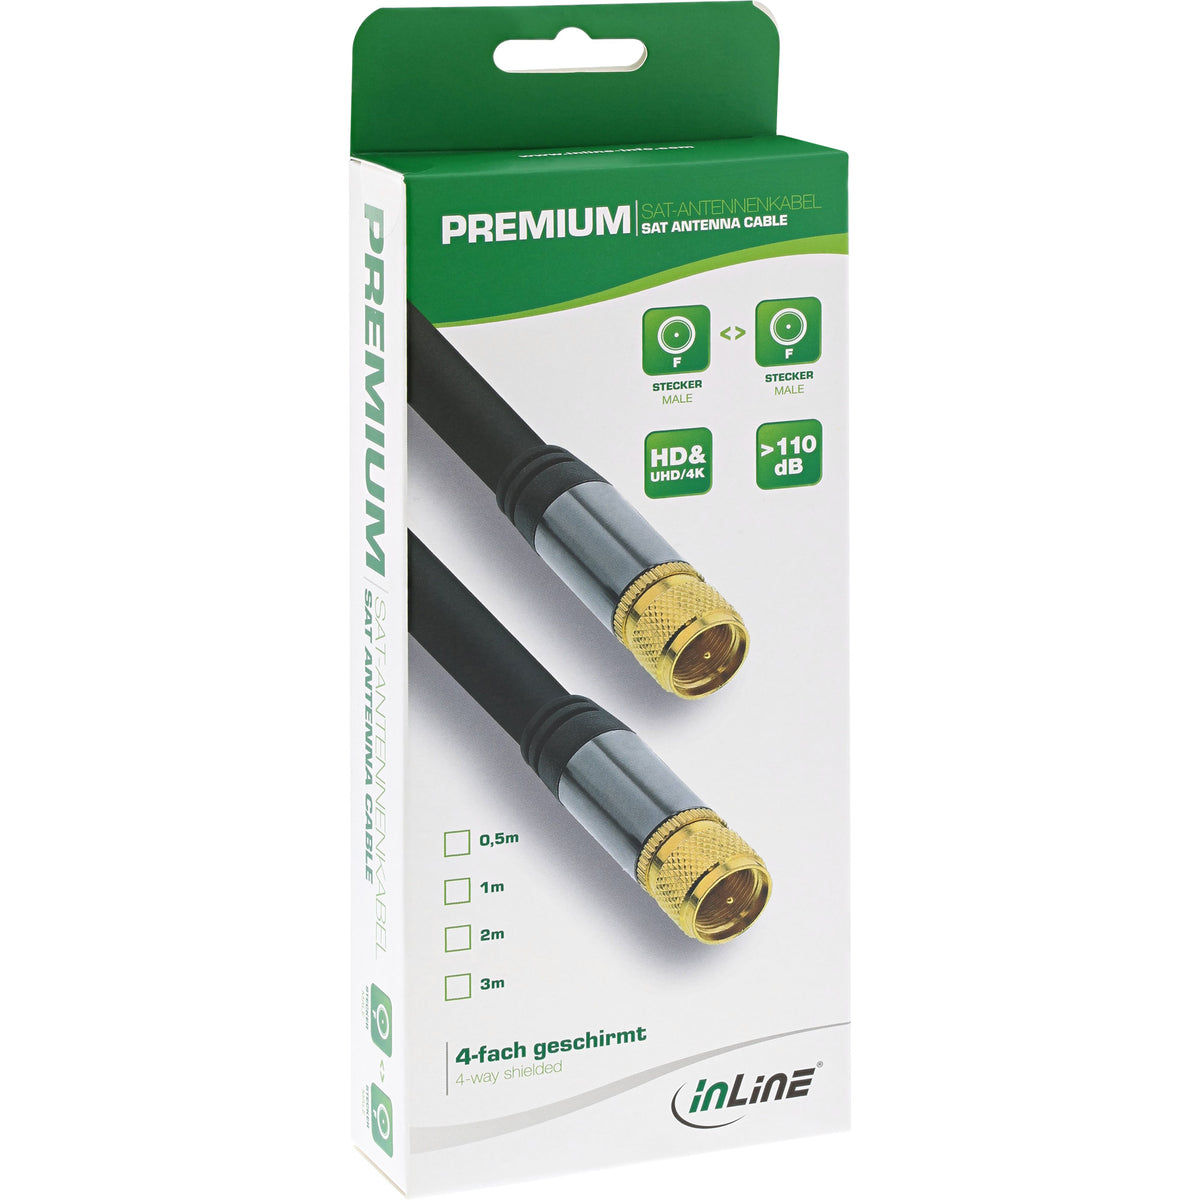 InLine Premium SAT-Kabel - 4x geschirmt - 2x F-Stecker - >110dB - schwarz - 2m